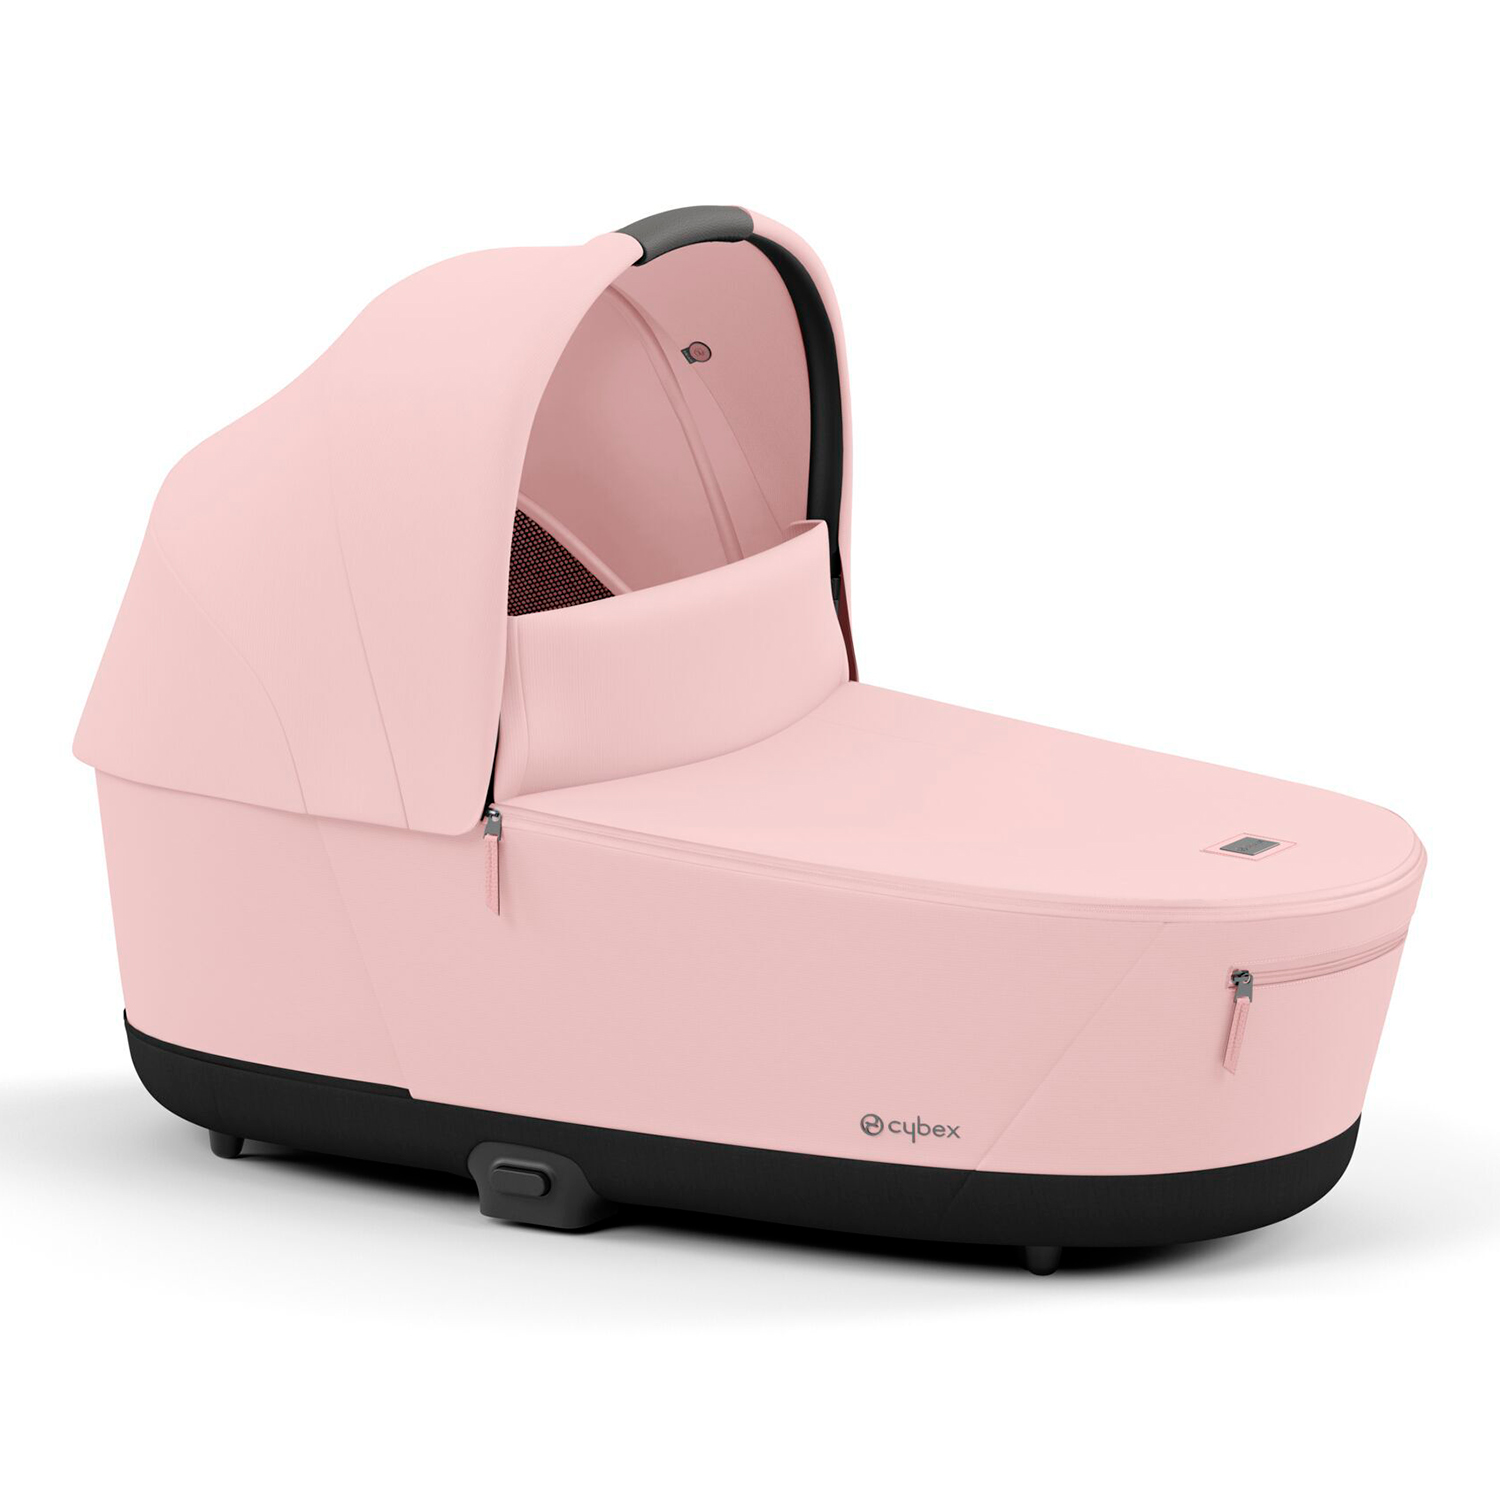 Спальный блок для коляски PRIAM IV Peach Pink CYBEX